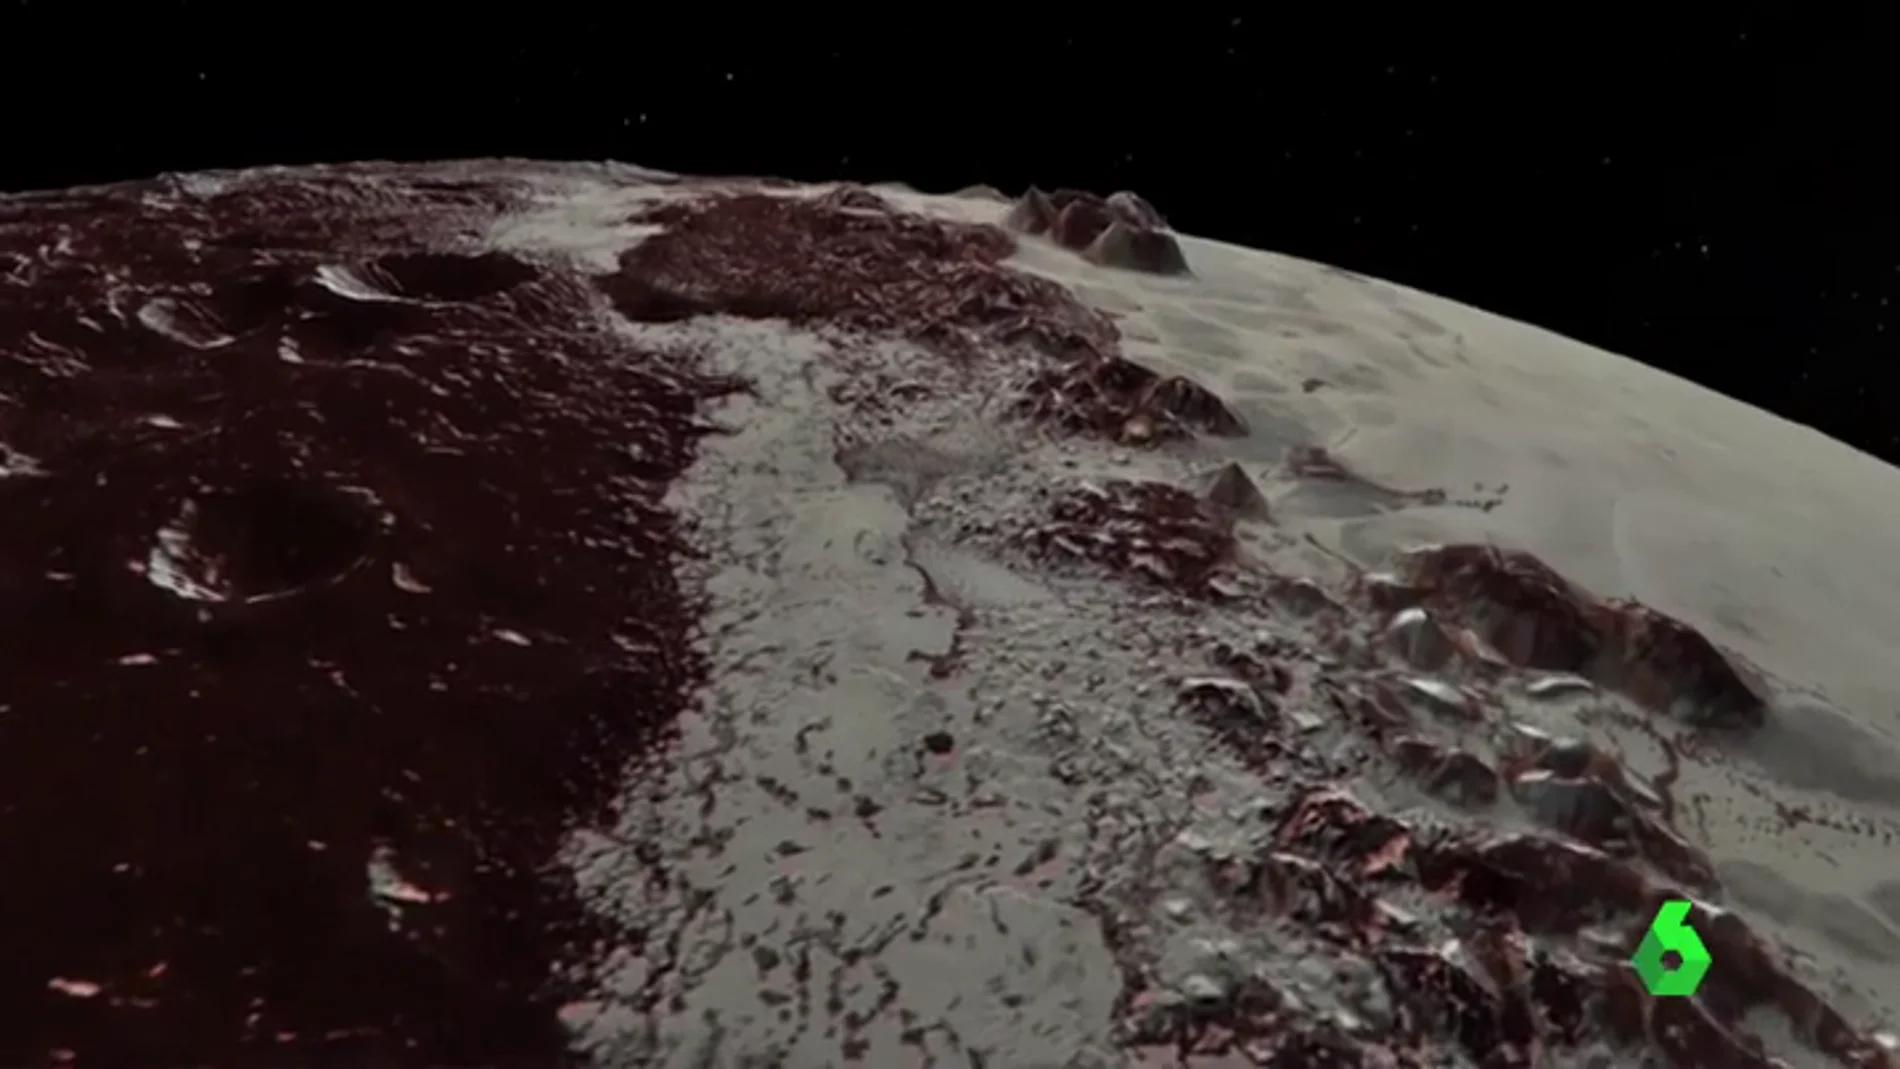 La NASA consigue captar nuevas y espectaculares imágenes de Plutón gracias a la sonda New Horizons